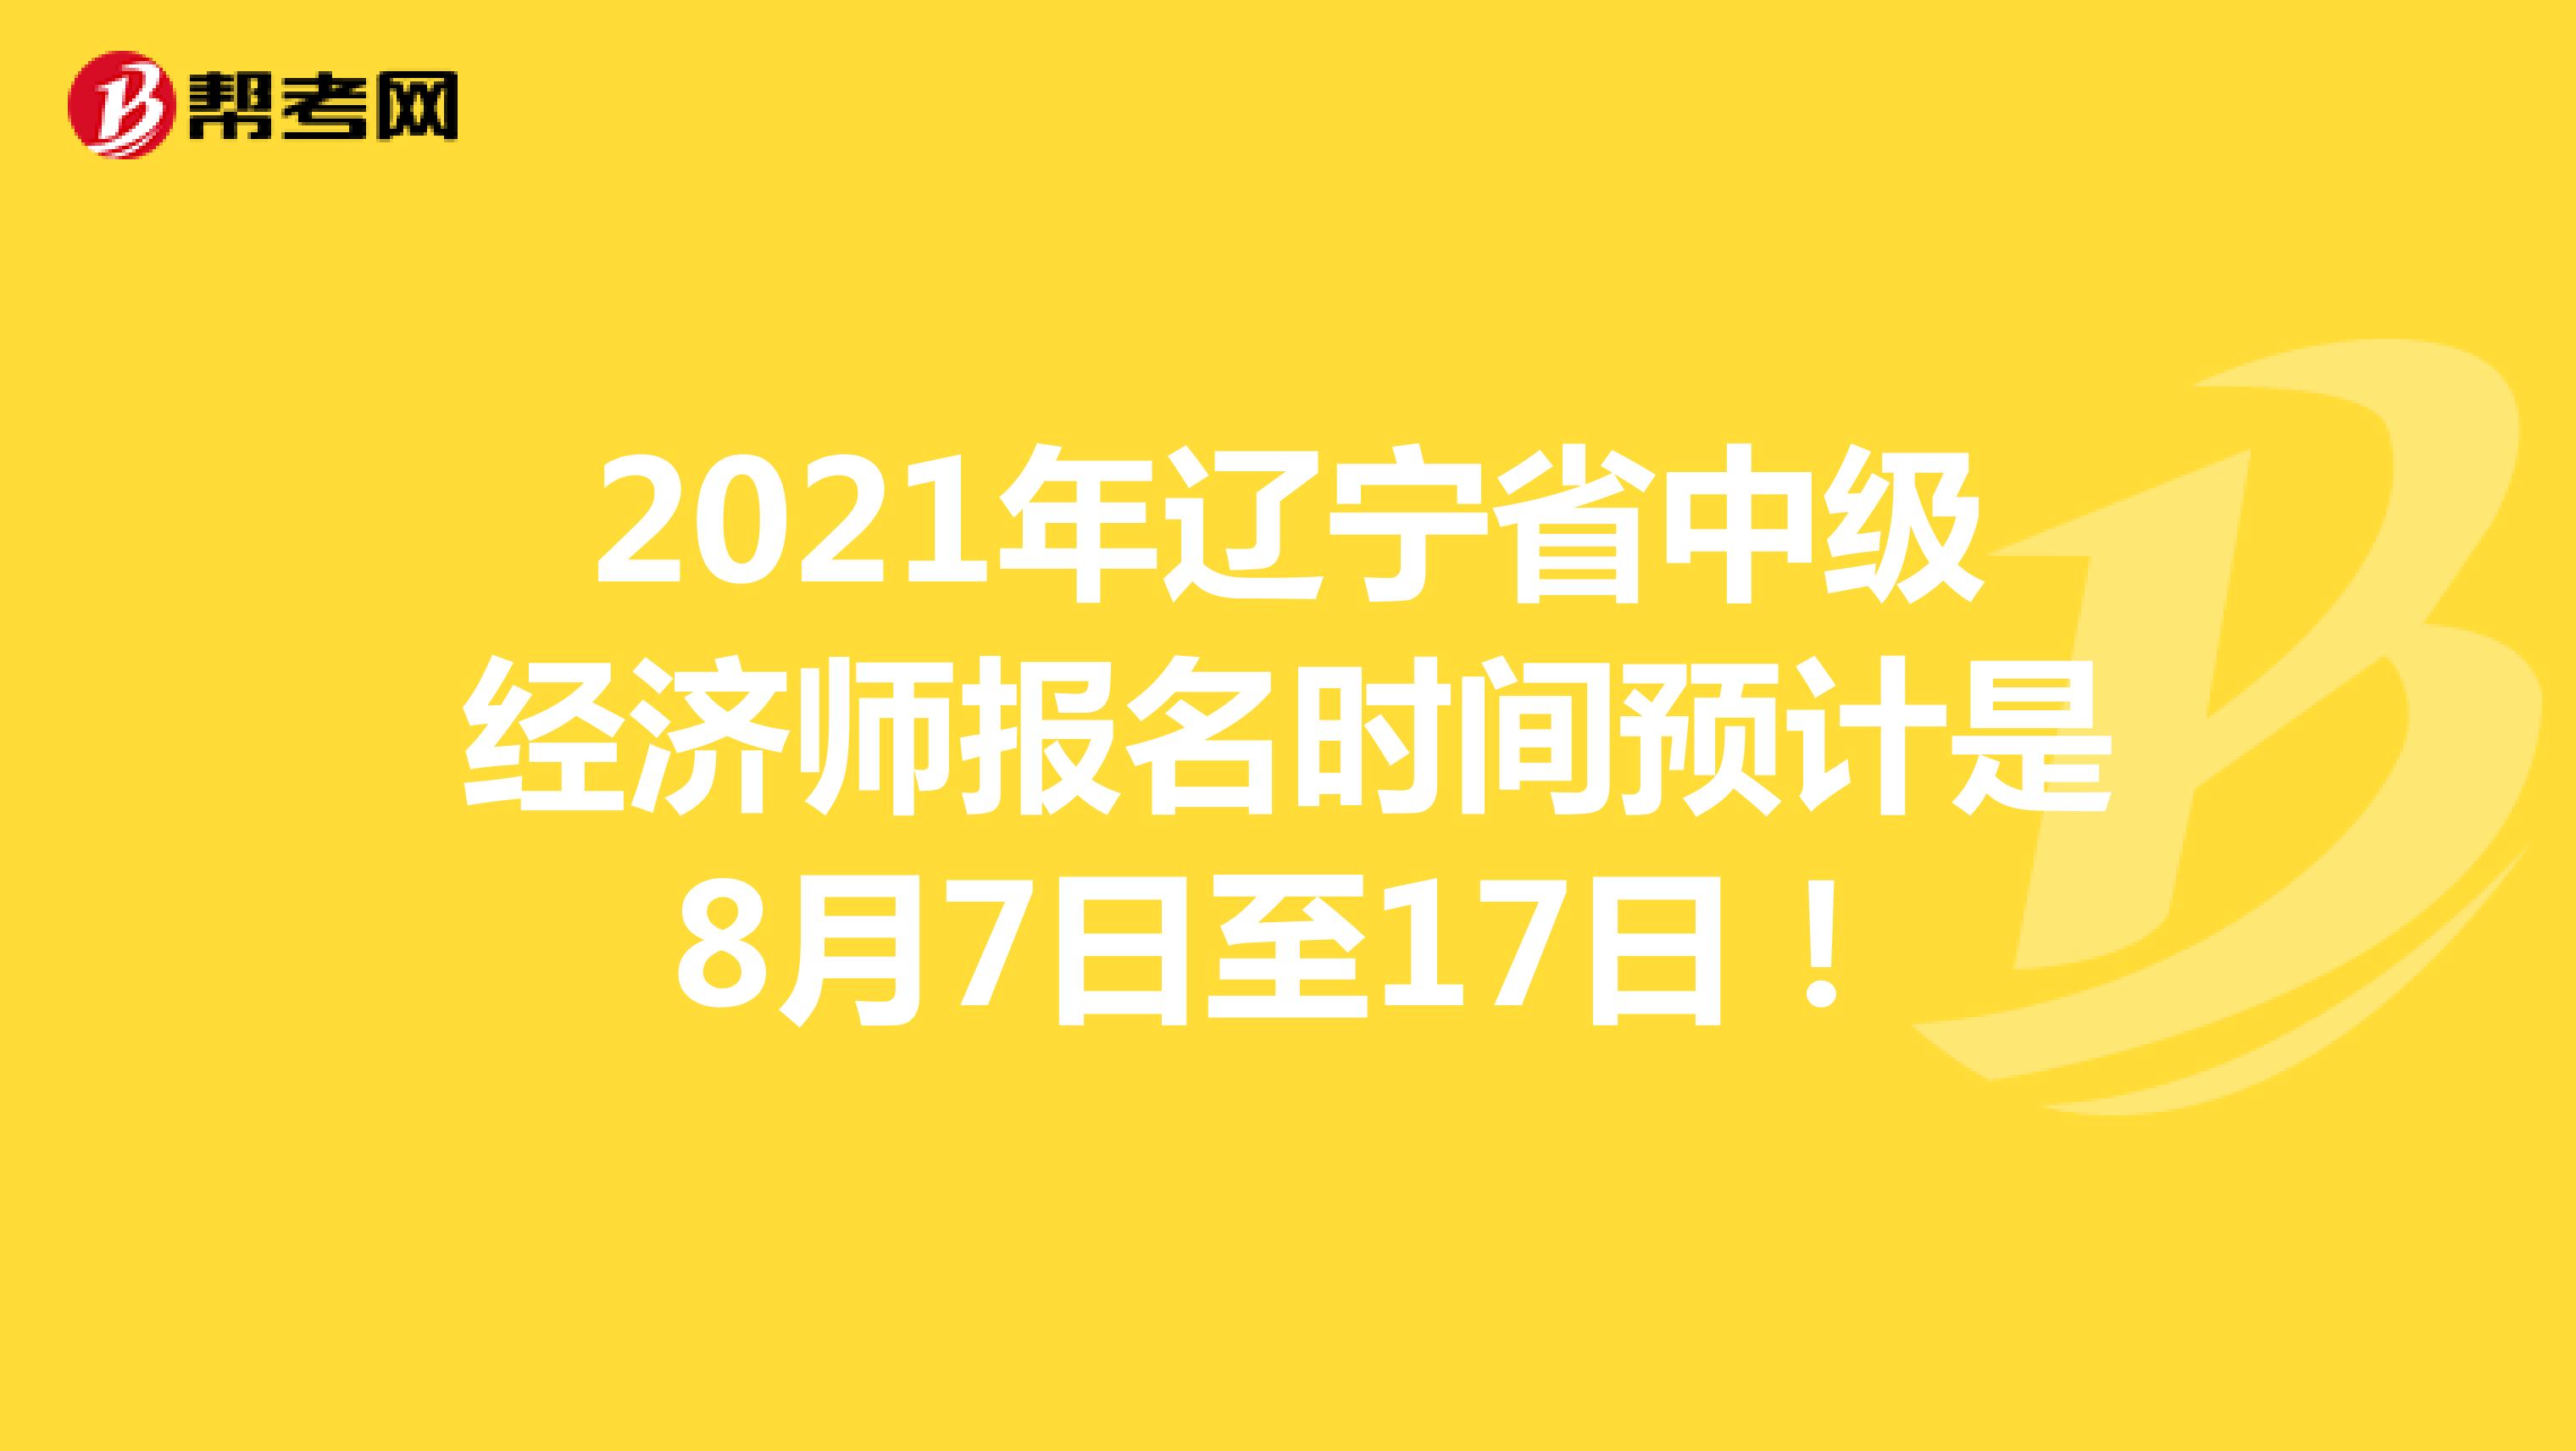 2021年辽宁省中级经济师报名时间预计是8月7日至17日！